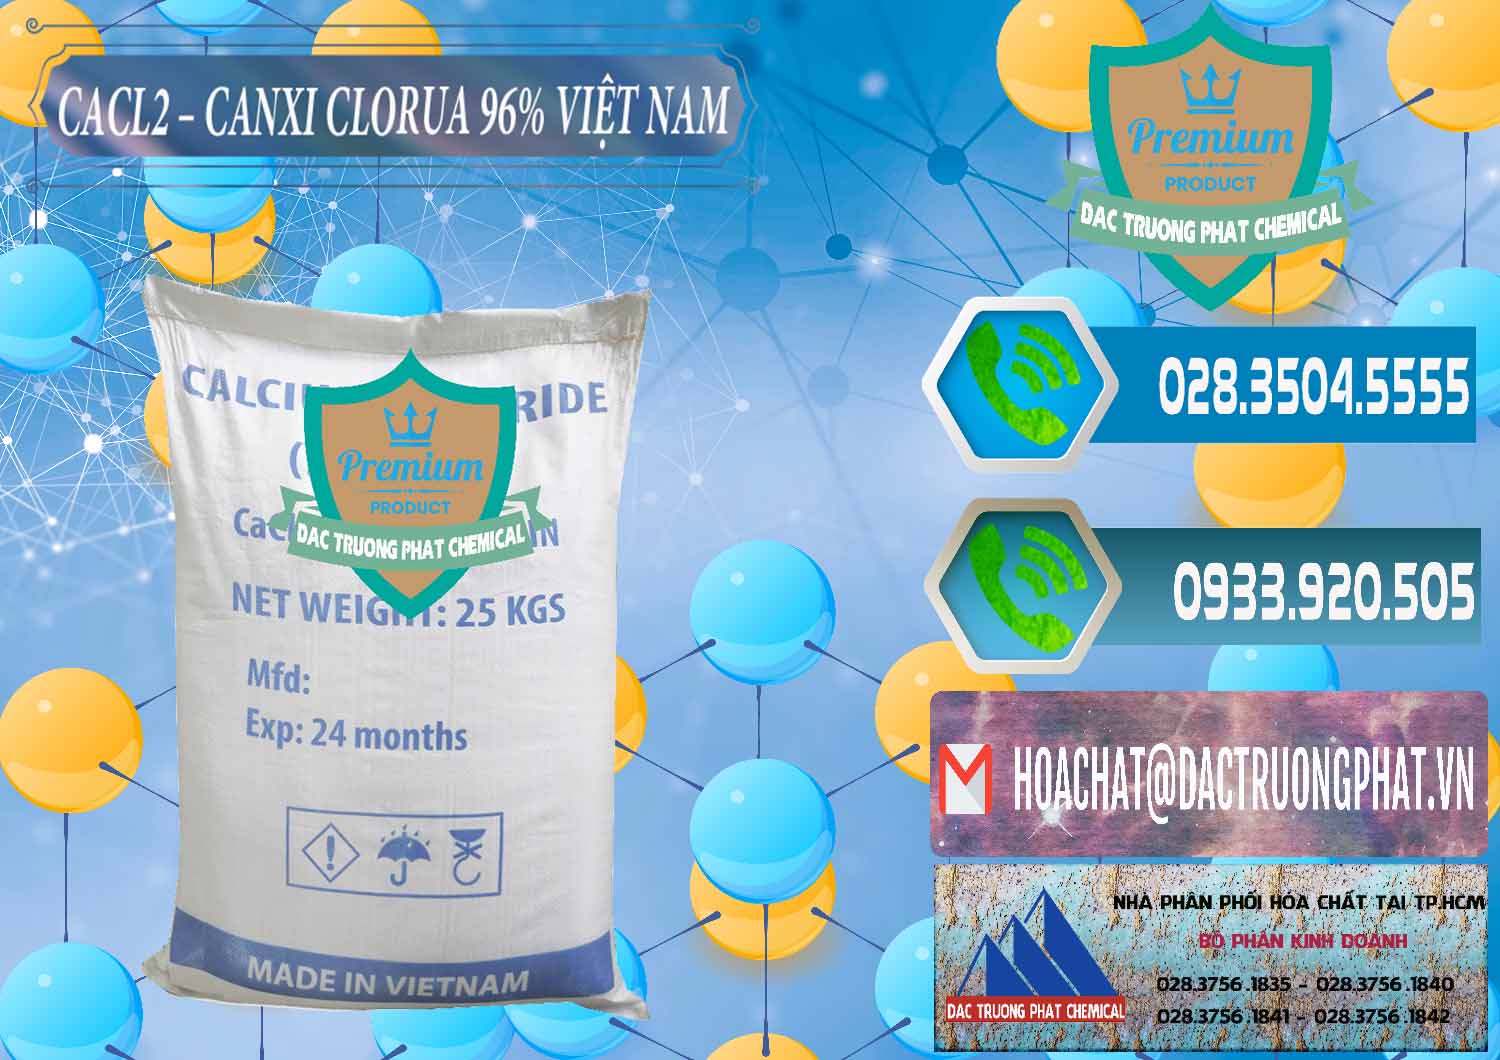 Chuyên phân phối ( kinh doanh ) CaCl2 – Canxi Clorua 96% Việt Nam - 0236 - Cty kinh doanh ( phân phối ) hóa chất tại TP.HCM - congtyhoachat.net